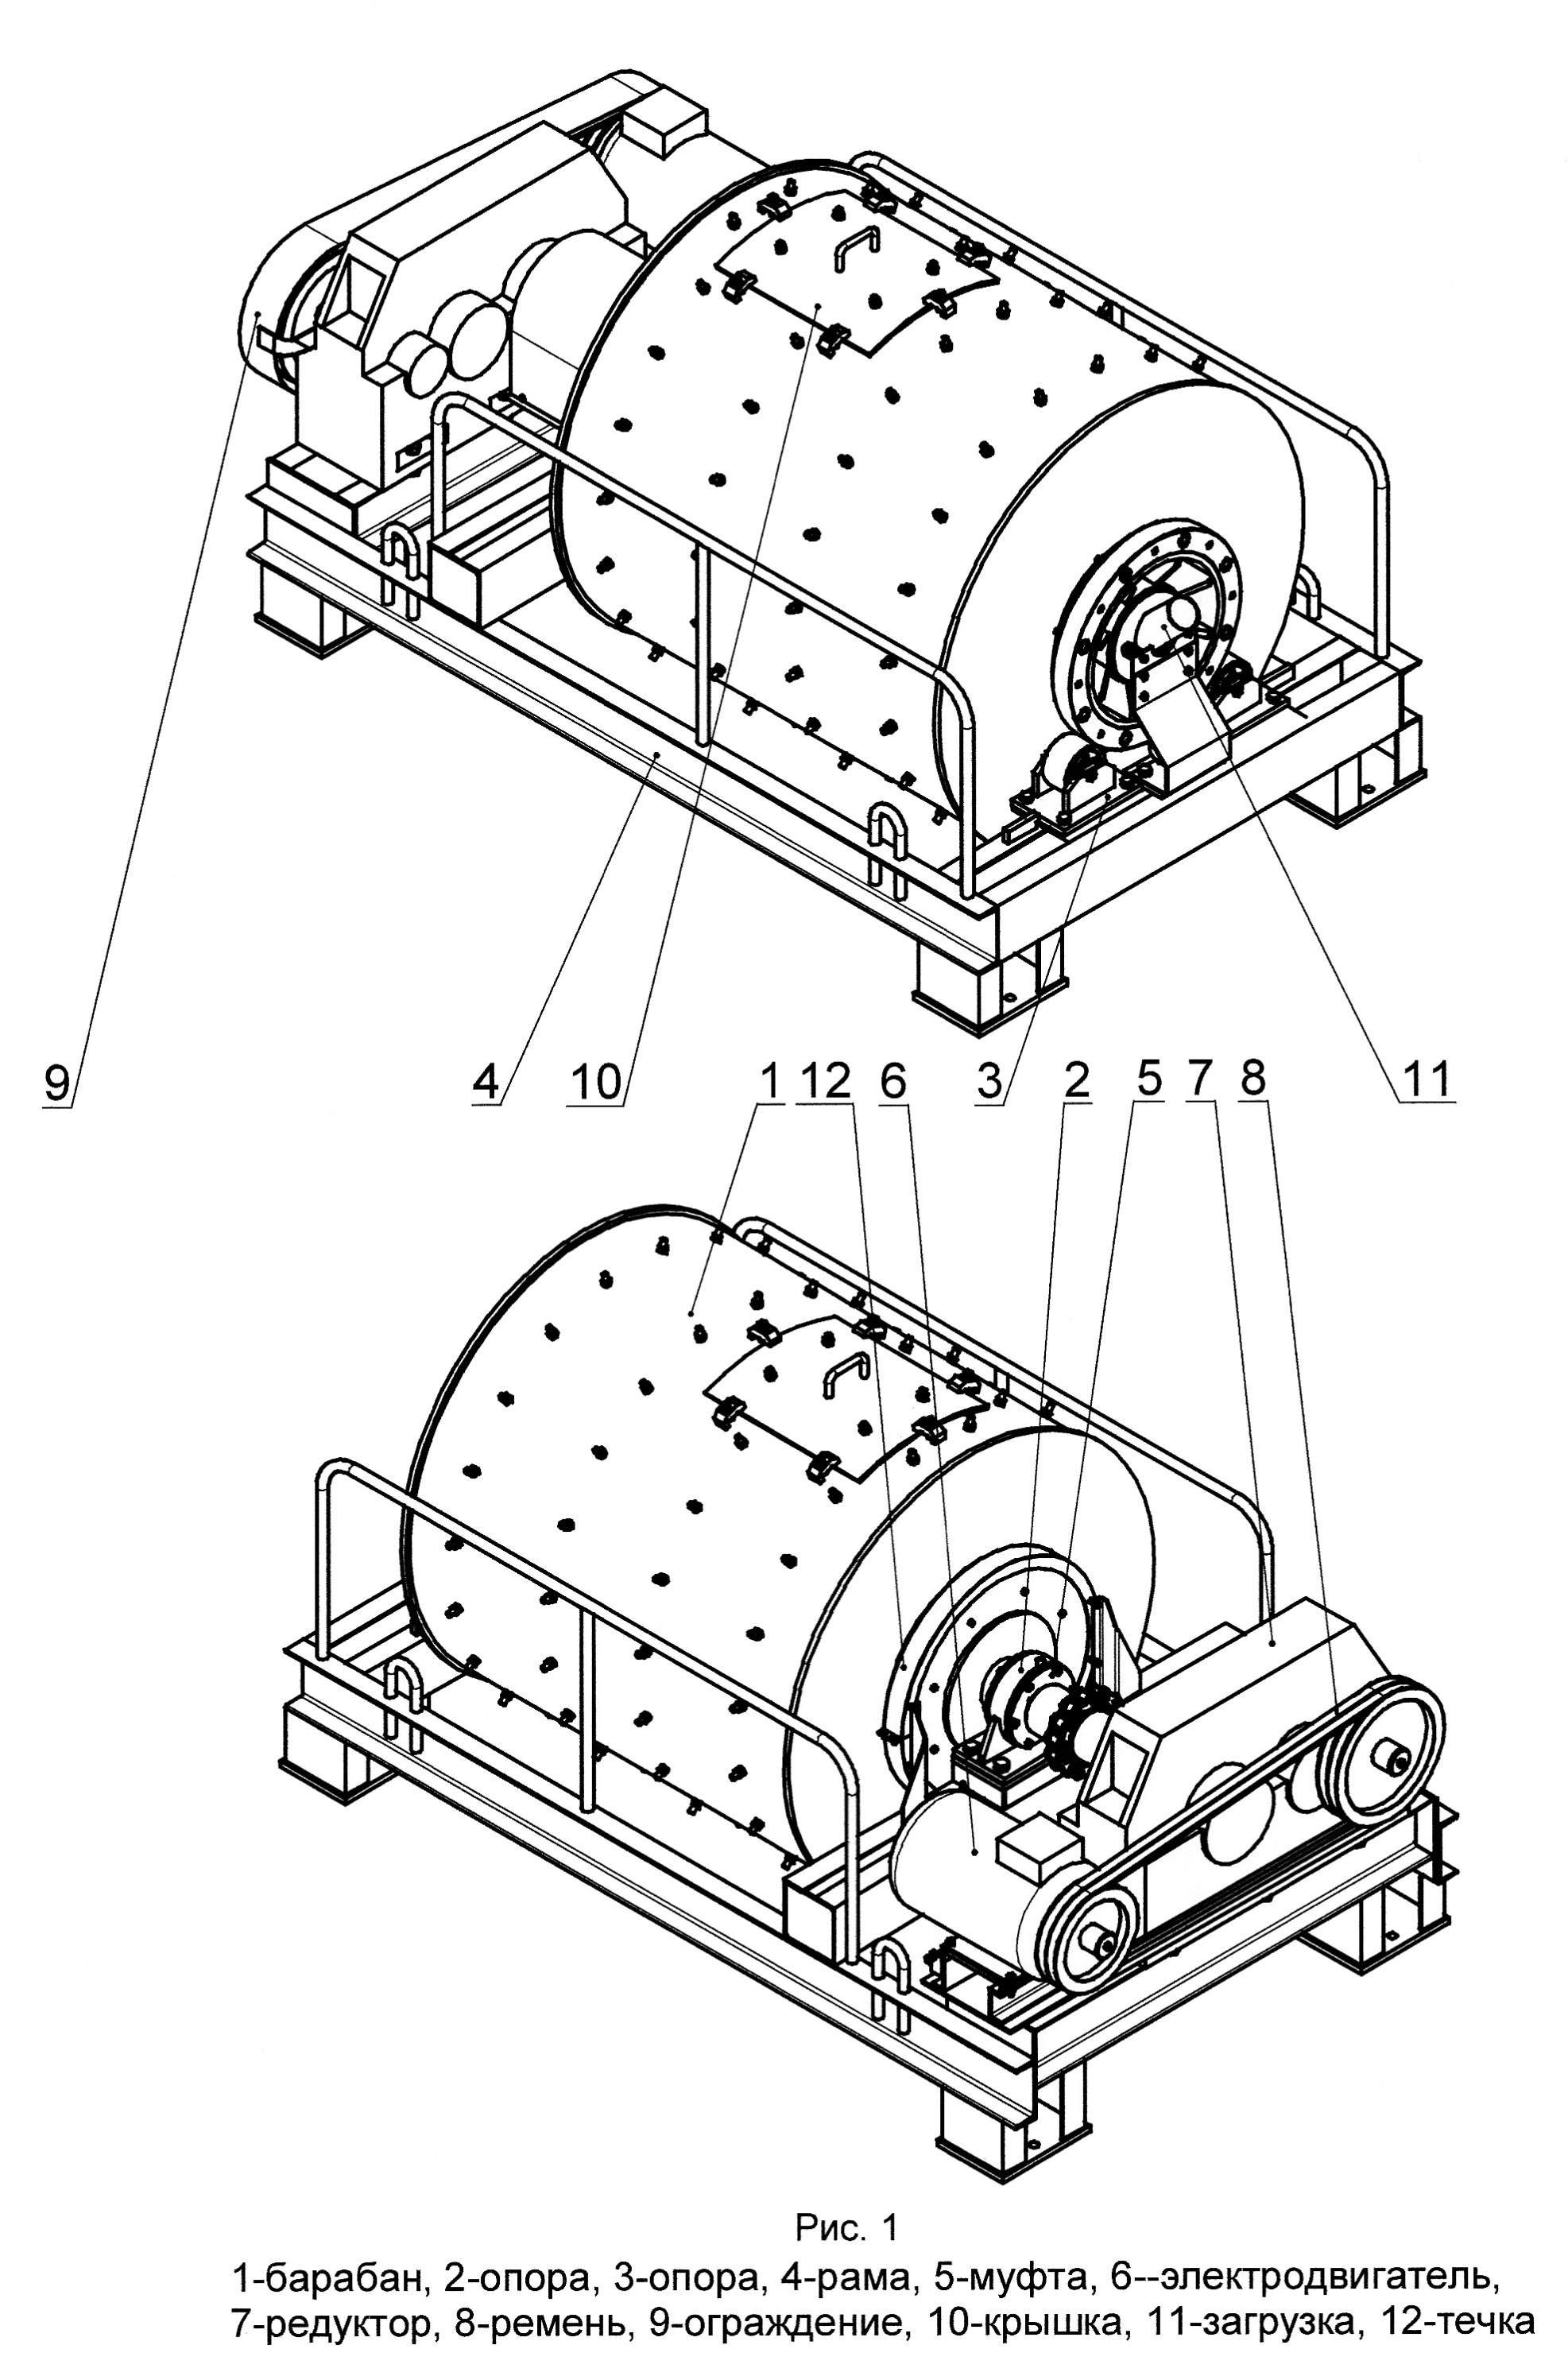 Устройство и принцип работы шаровой мельницы МШН-2